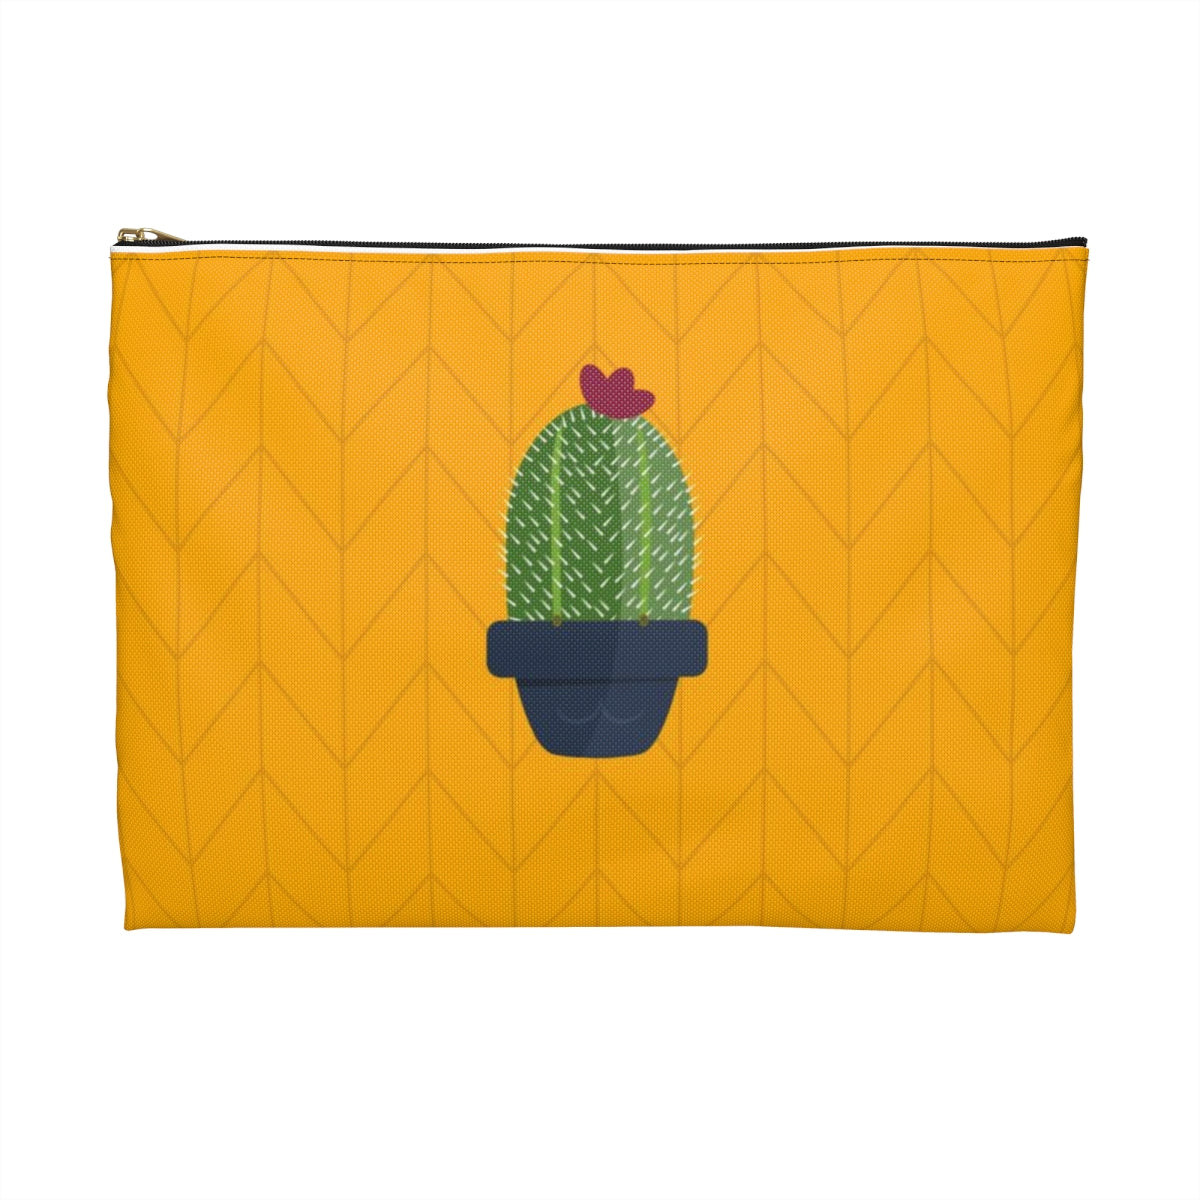 Flat Zipper Pouch - Plant Nerd Cactus